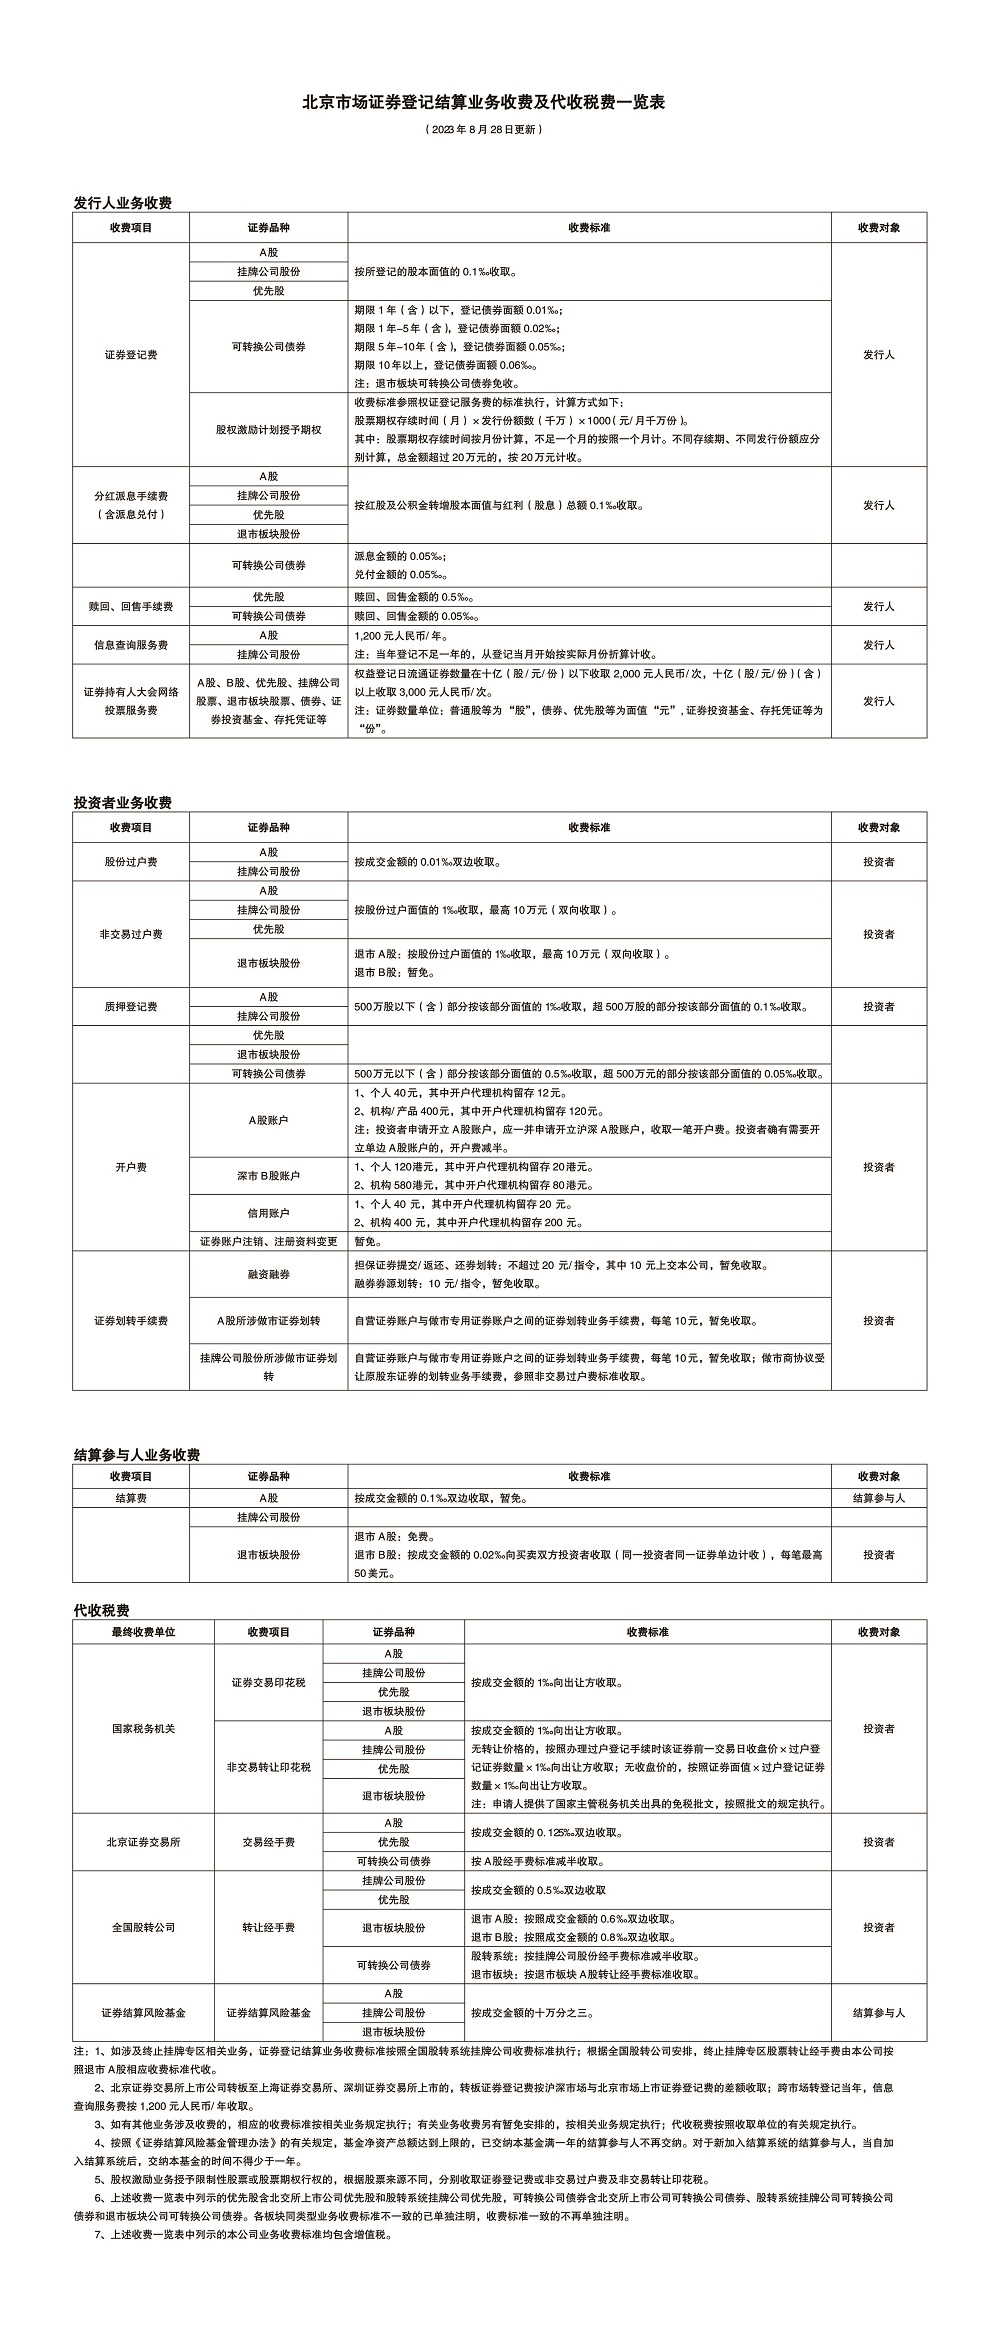 北京市场证券登记结算业务收费及代收税费一览表.jpg